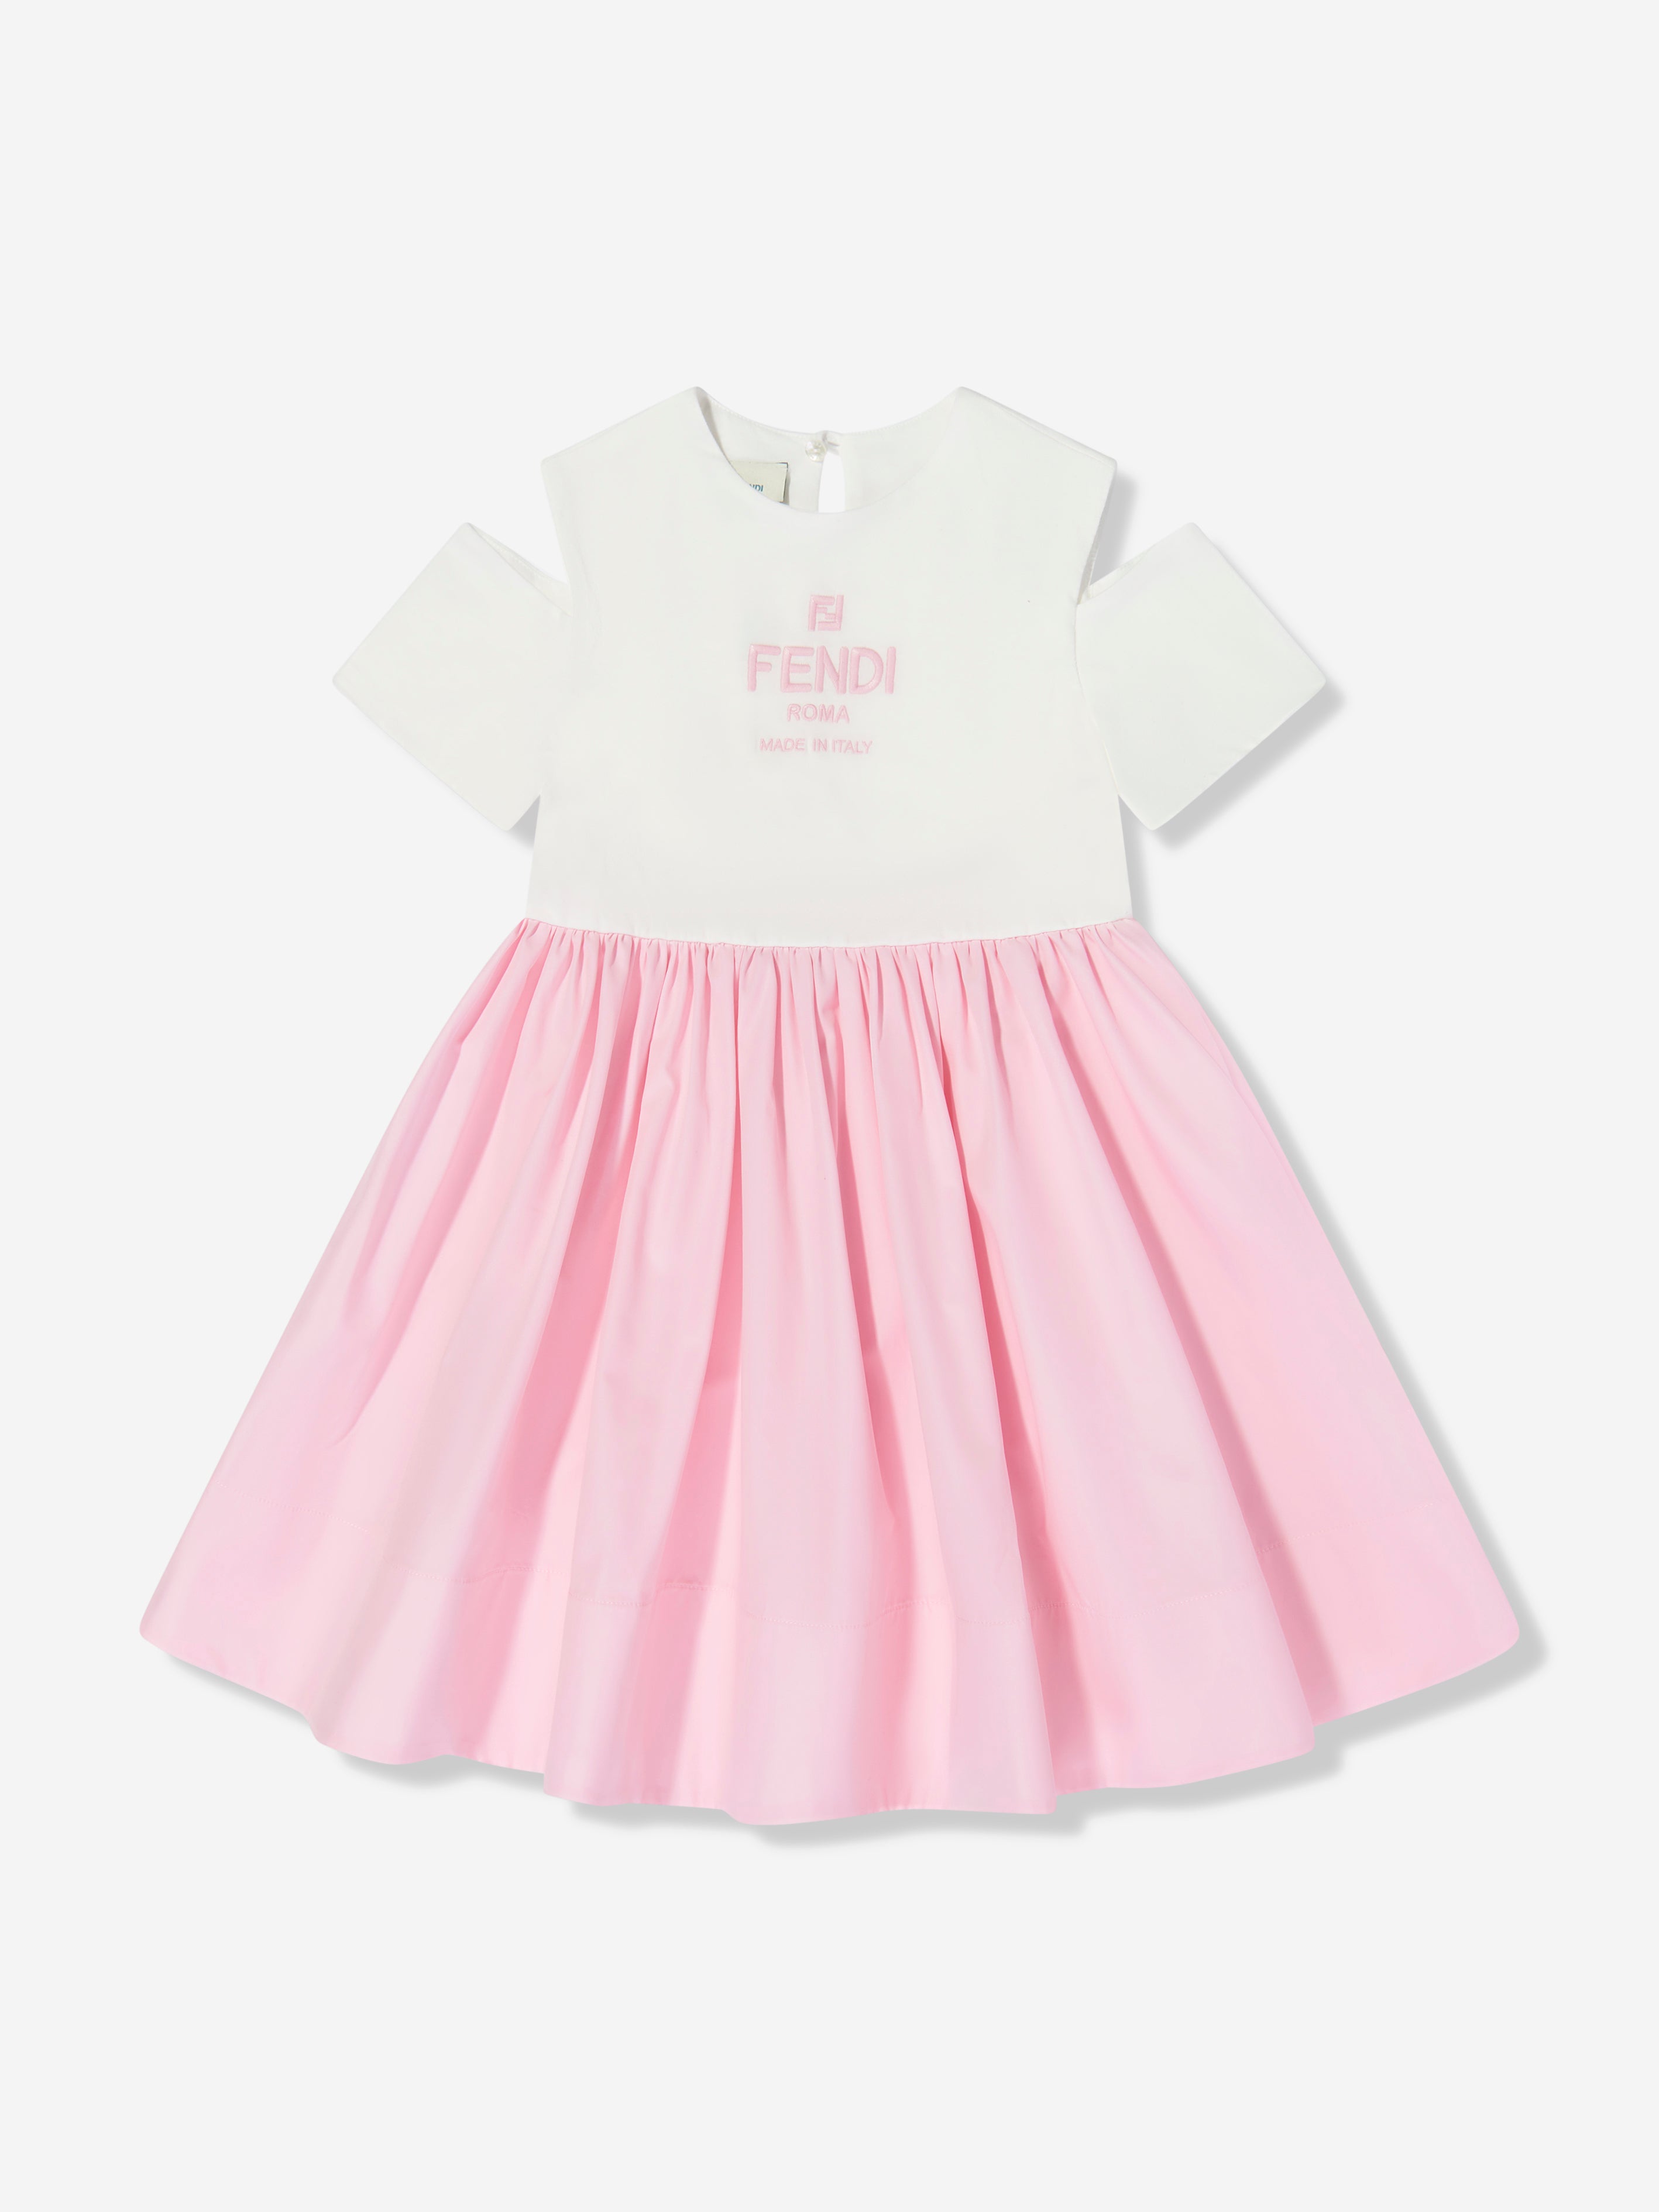 Fendi Kids' Girls Cotton Logo Dress In Pink